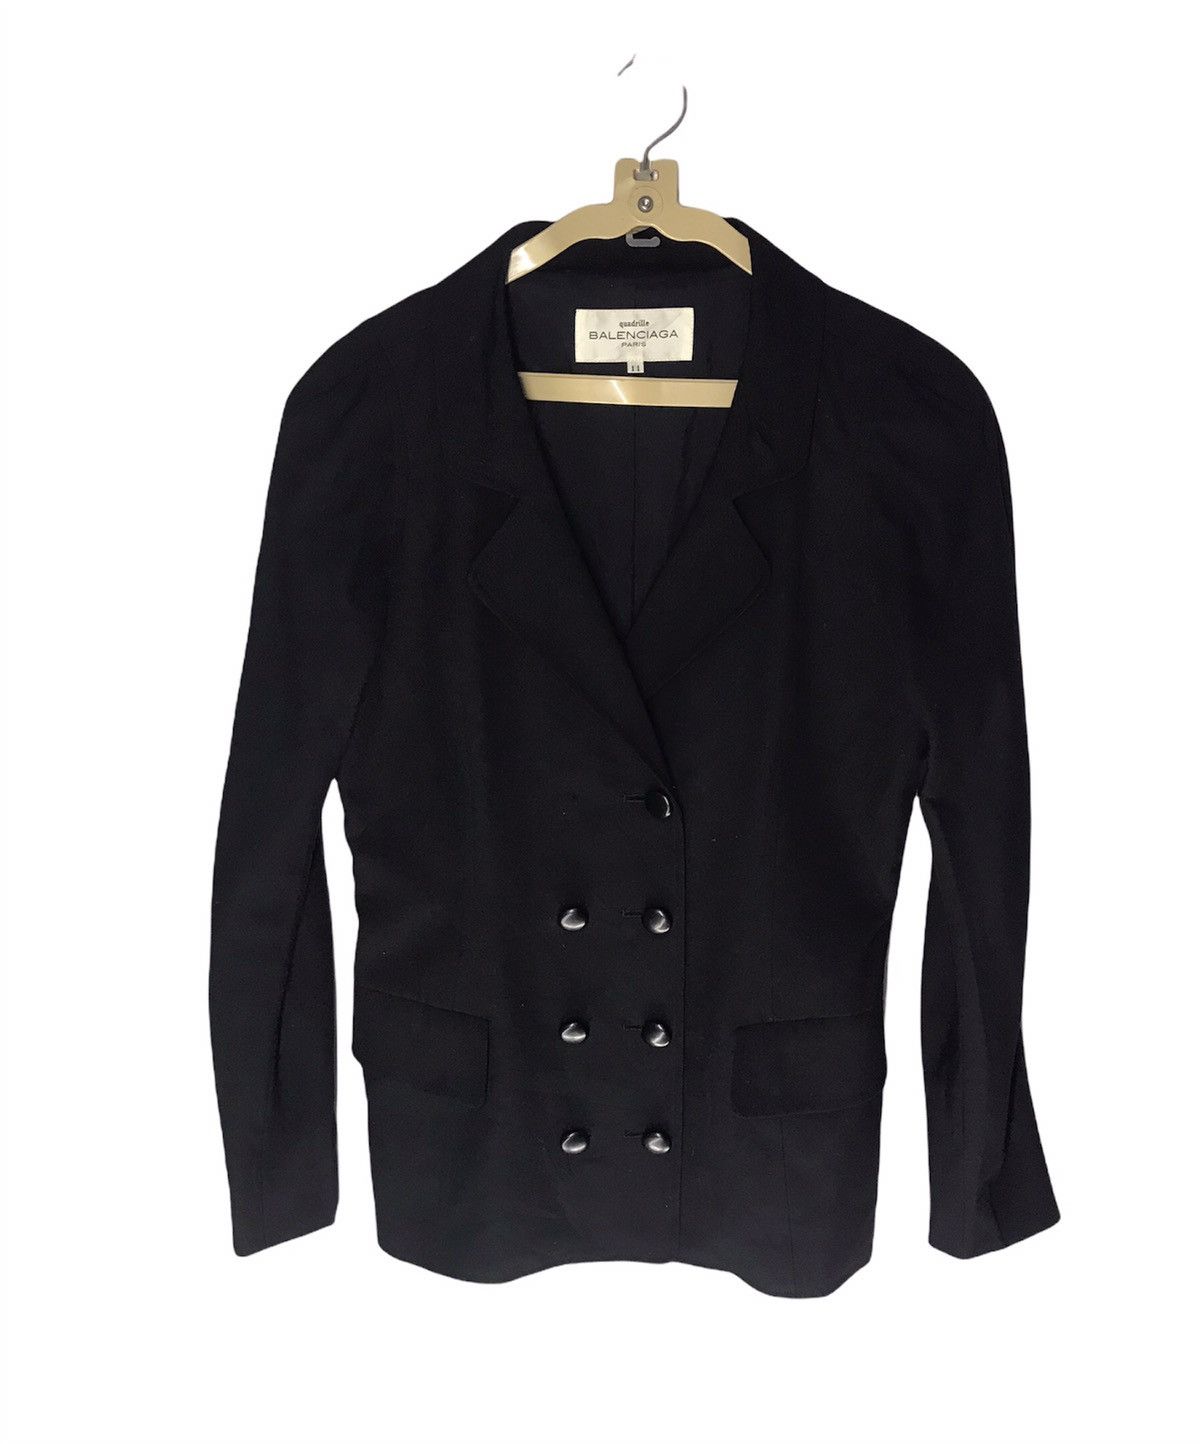 Balenciaga Quadrille balenciaga coat jacket woman | Grailed